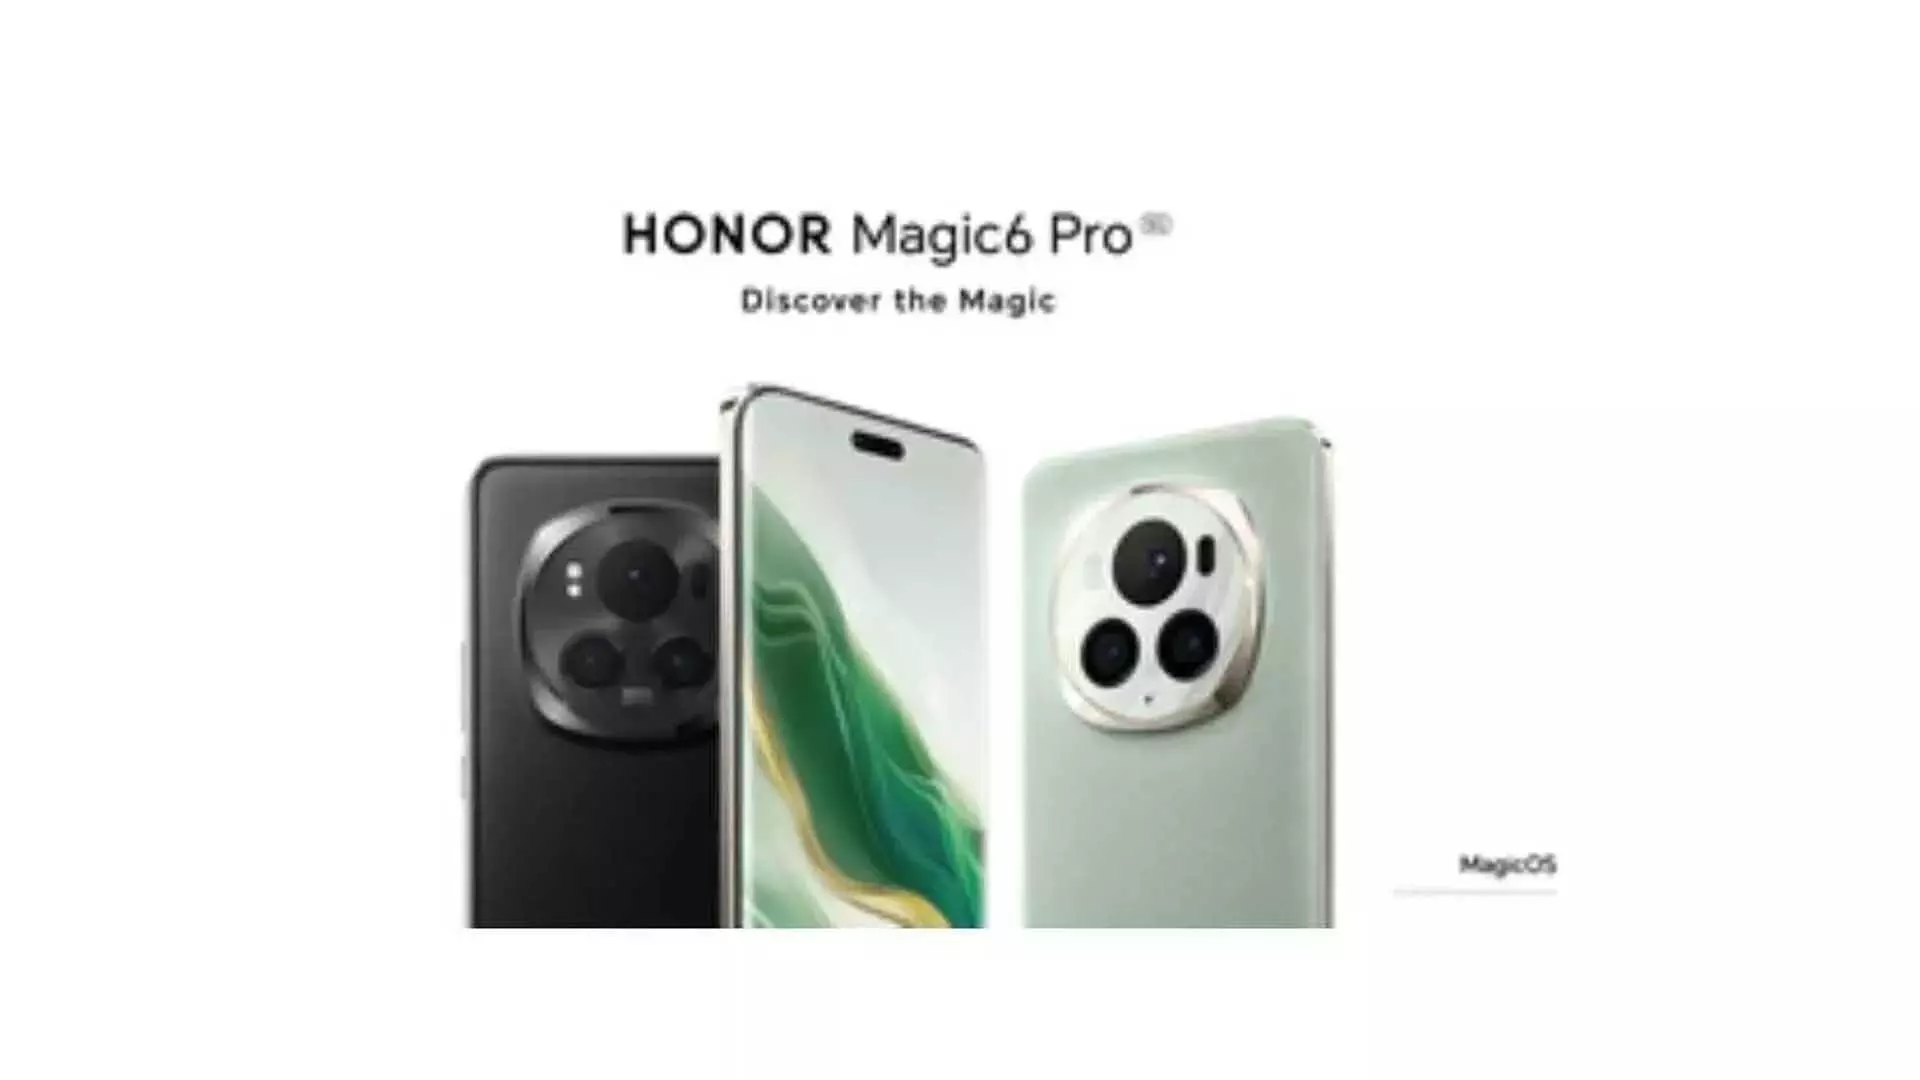 HONOR Magic6 Pro 5G - दुनिया का सबसे उन्नत स्मार्टफोन